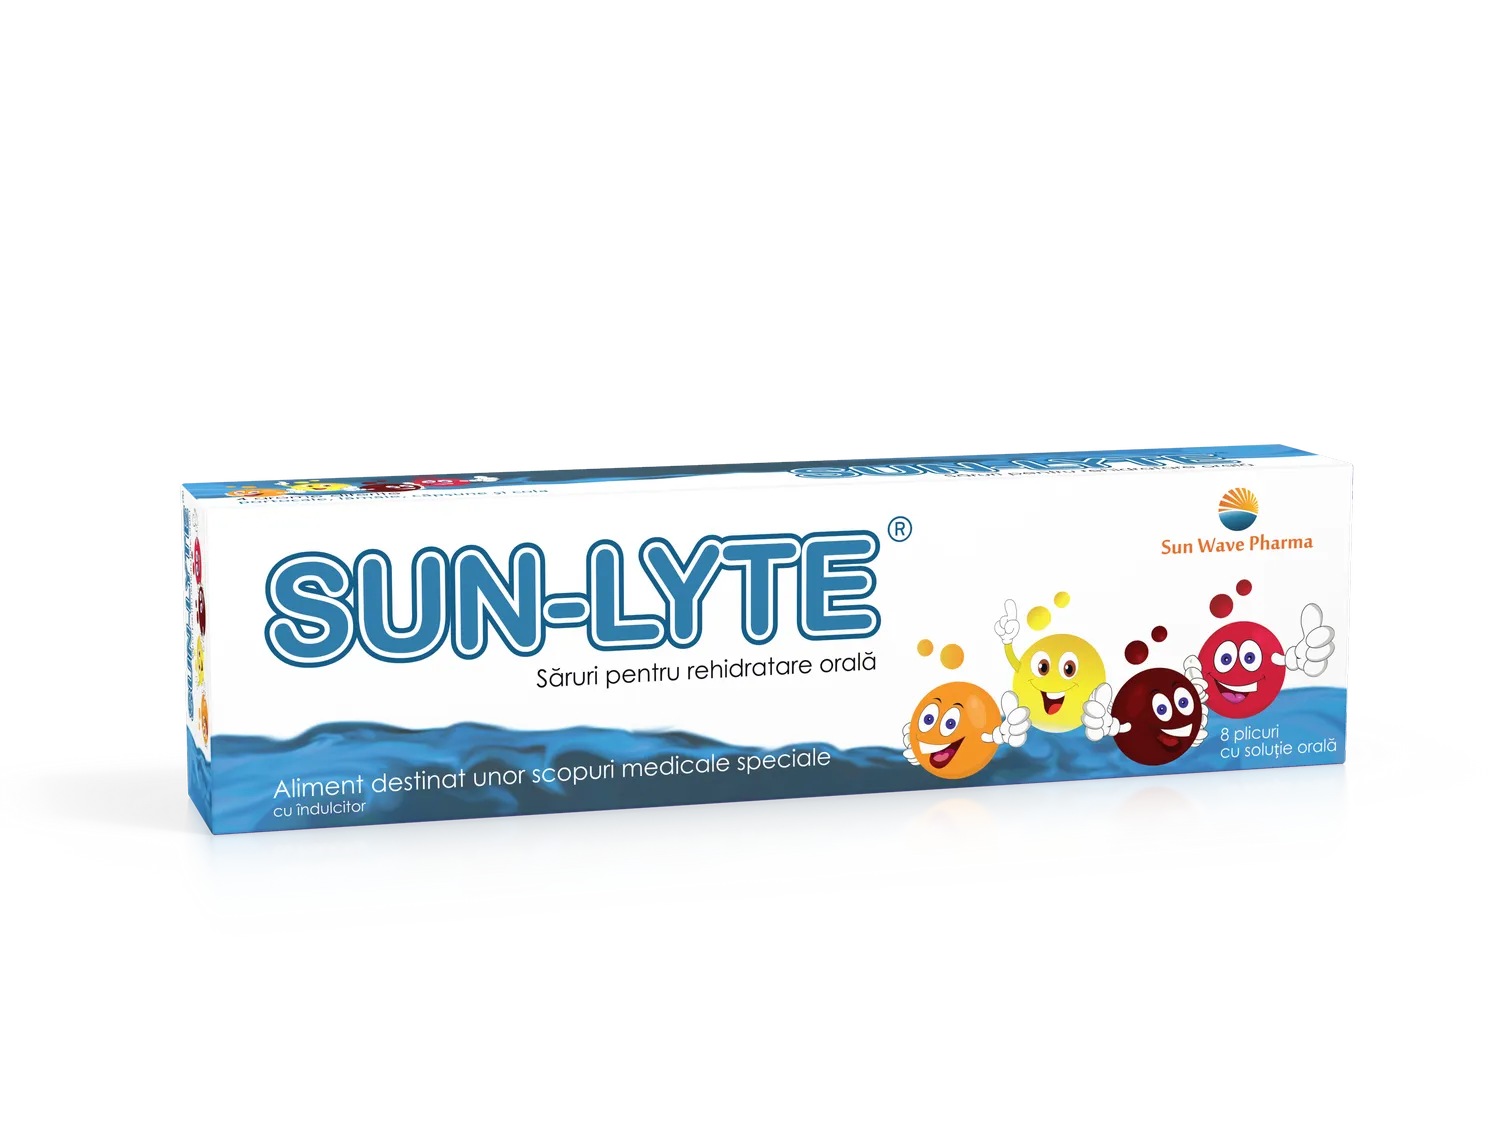 Sun-Lyte saruri de rehidratare, 8 plicuri, Sun Wave Pharma